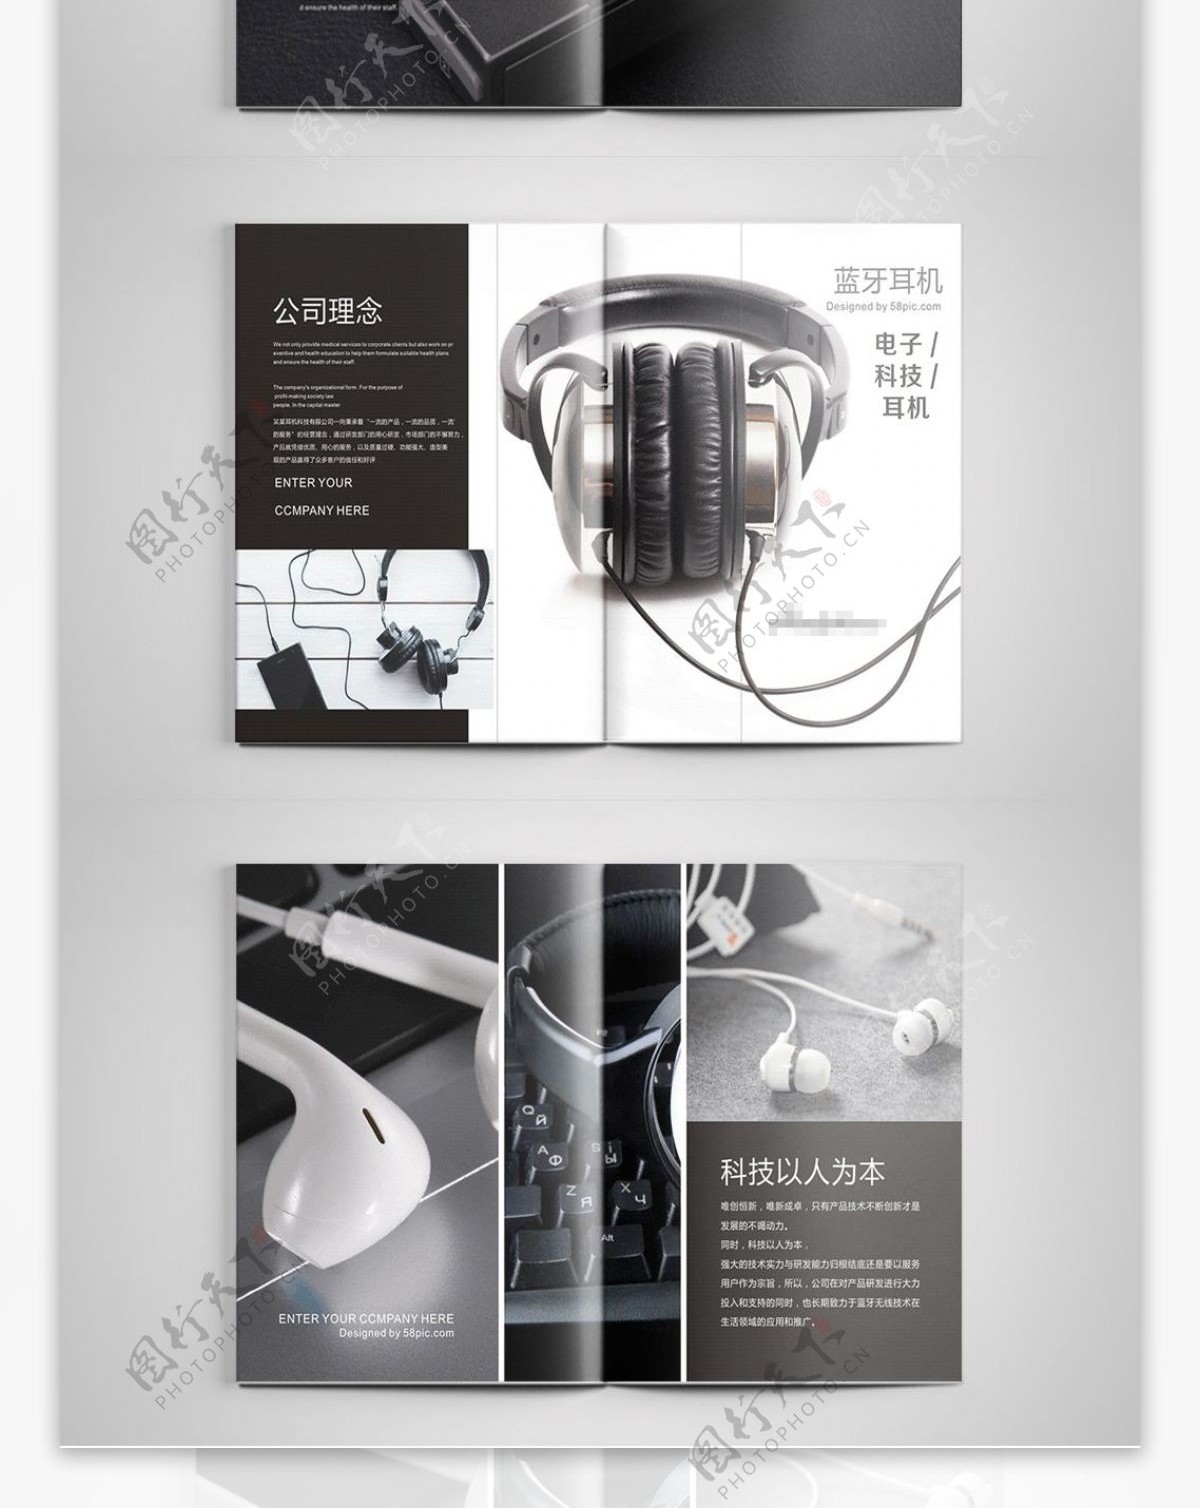 黑白炫酷电子耳机科技产品画册